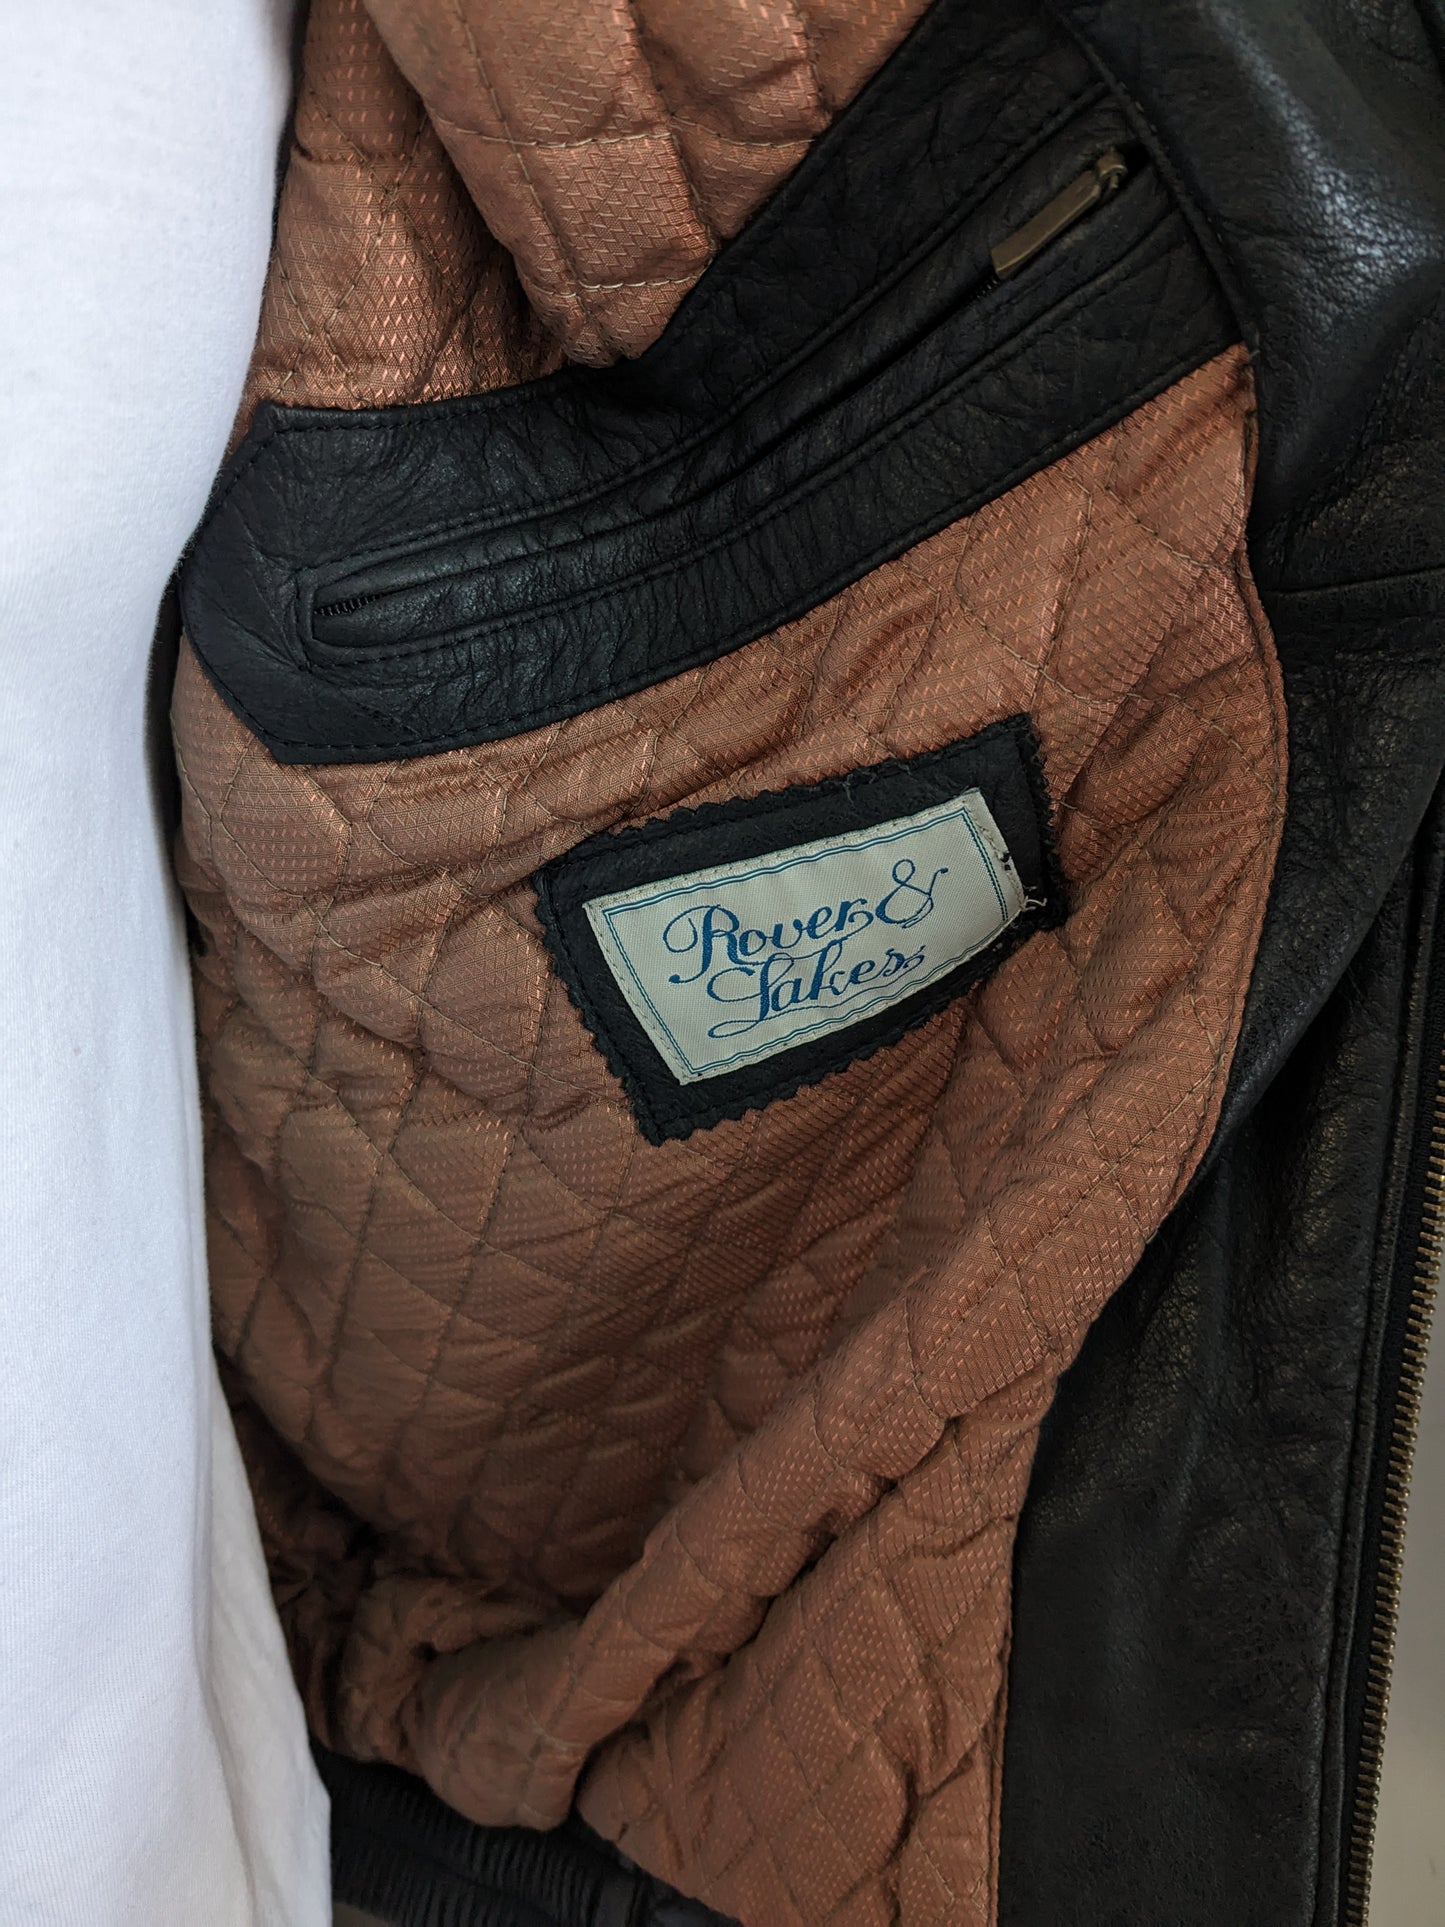 Vintage des années 80 - 90's Rover & Lakes apprend le corps du corps / gilet. Beaucoup de sacs, 2 poches intérieures et légèrement doublés. Marron noir. Taille xl.